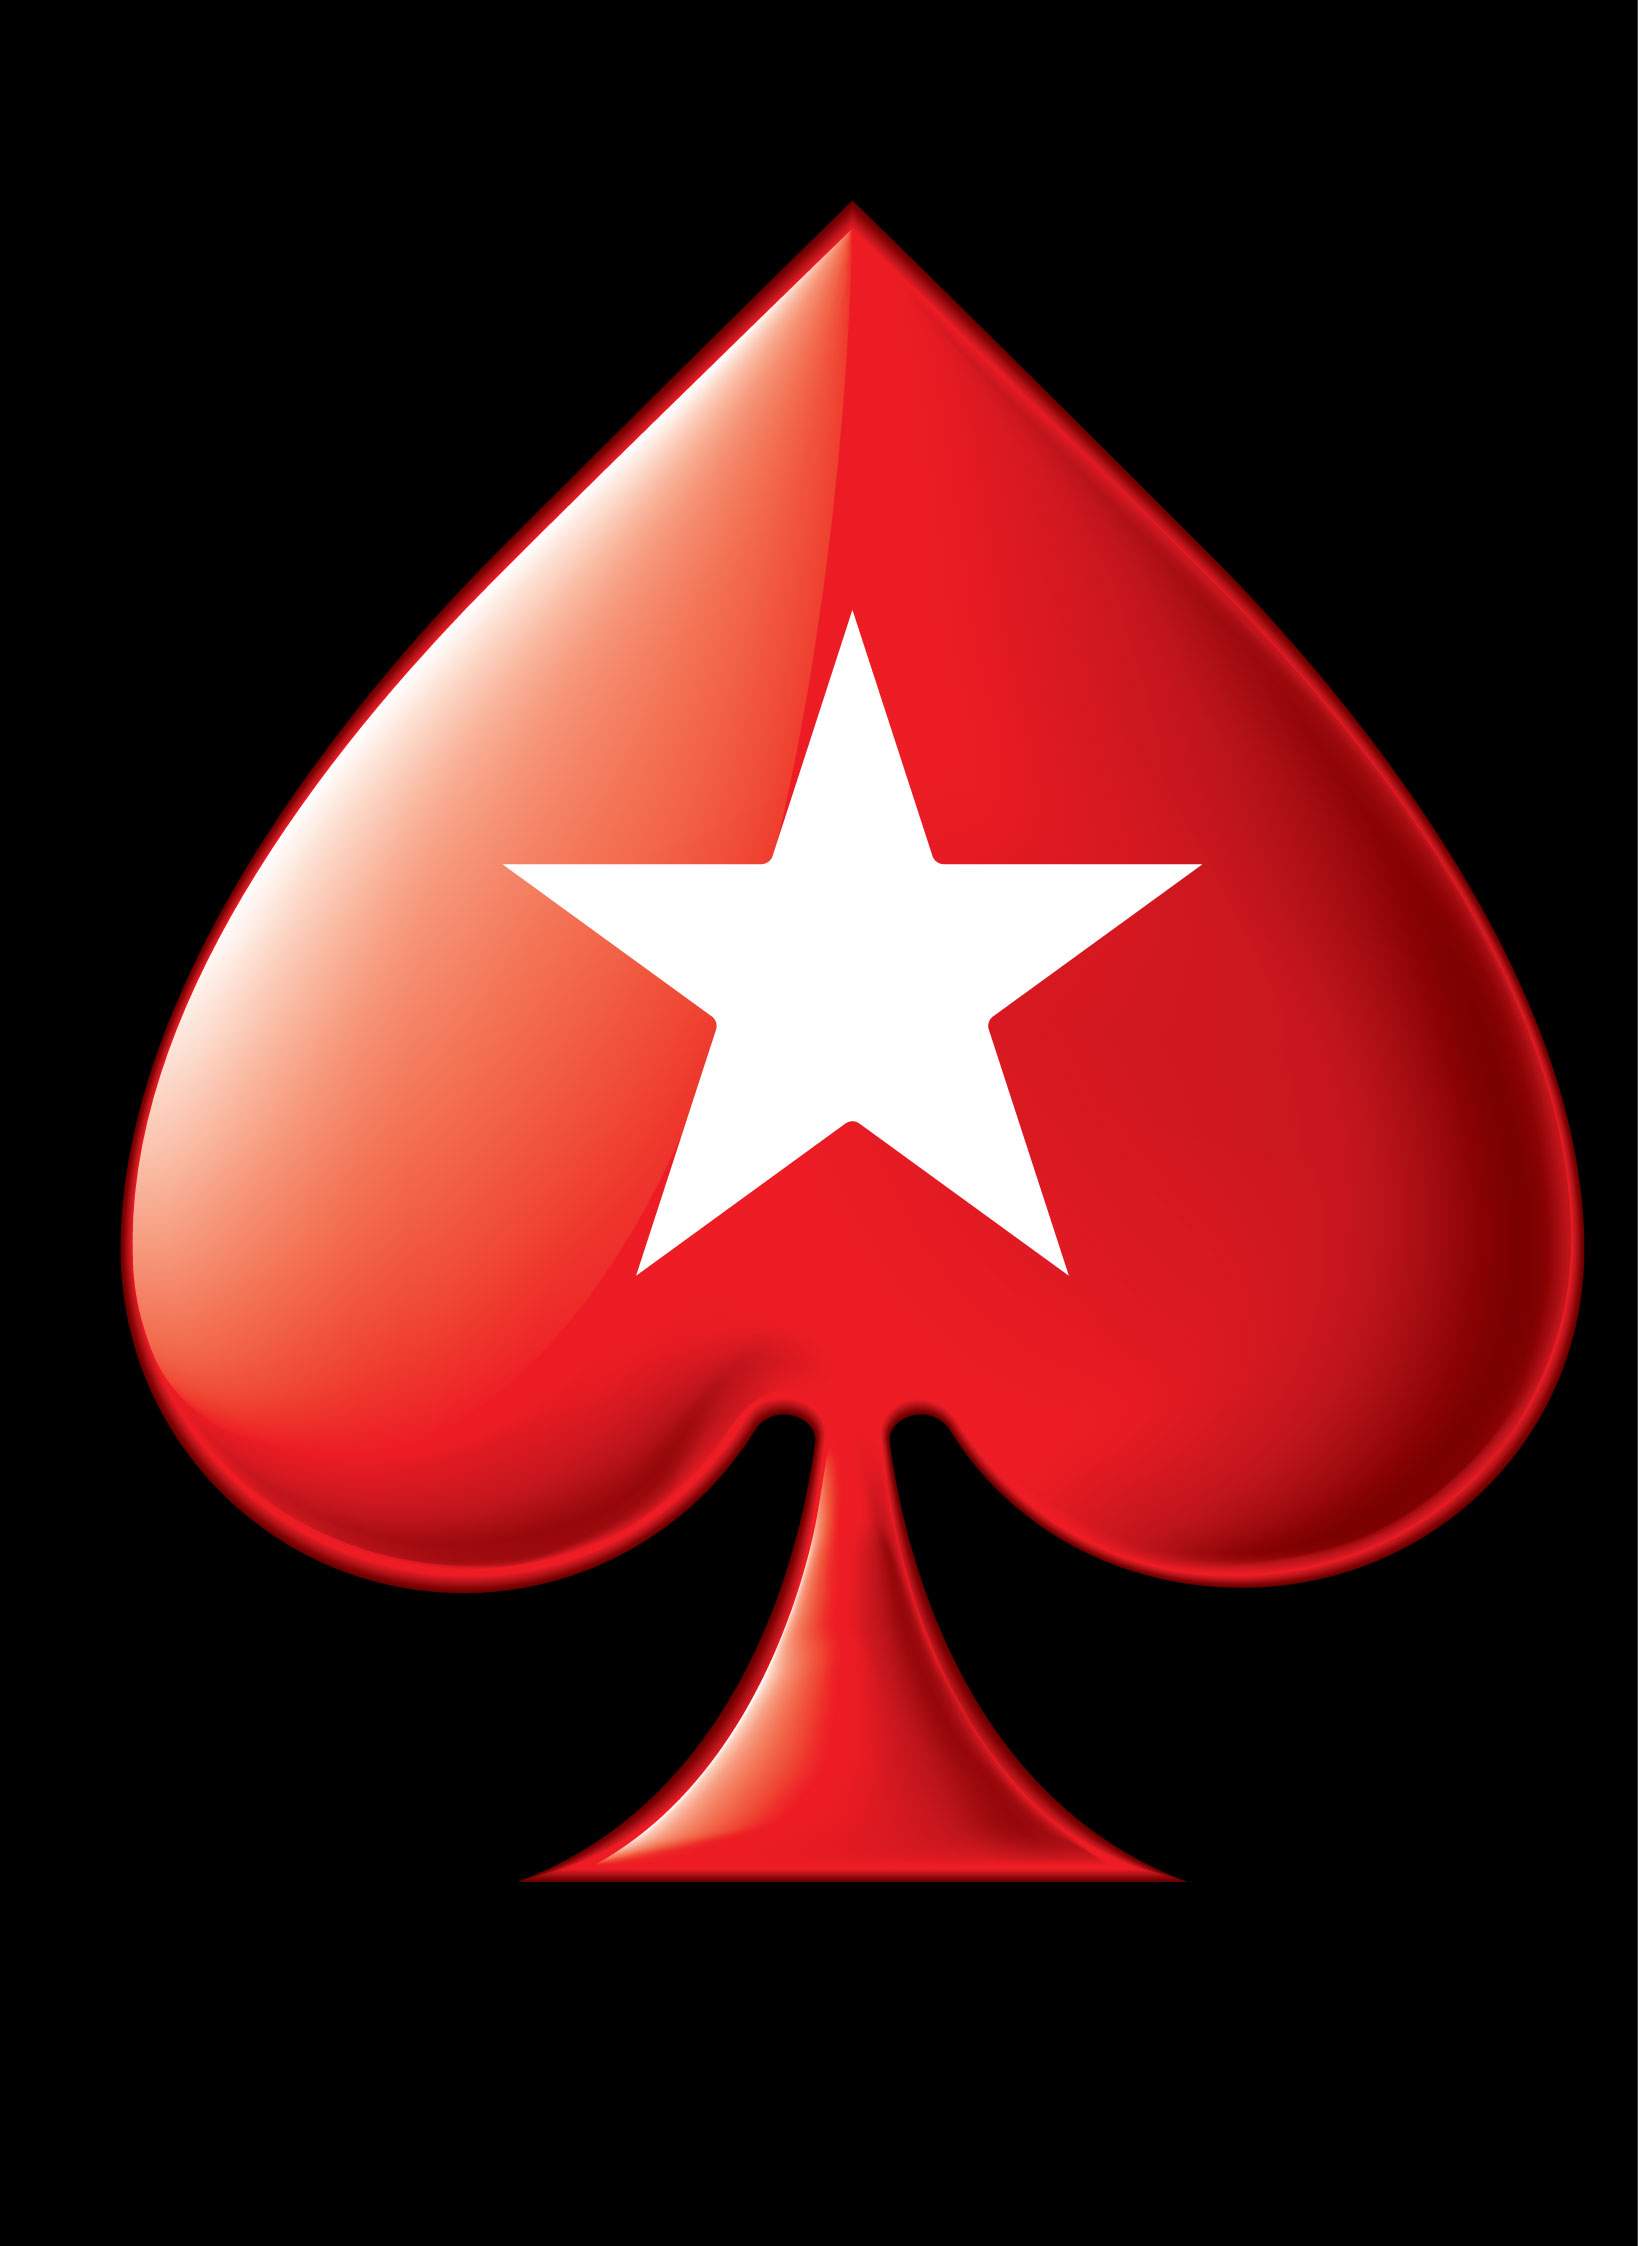 Poker stars com. Покерстарс. Значок pokerstars. Покер старс лого. Покер старс фото.